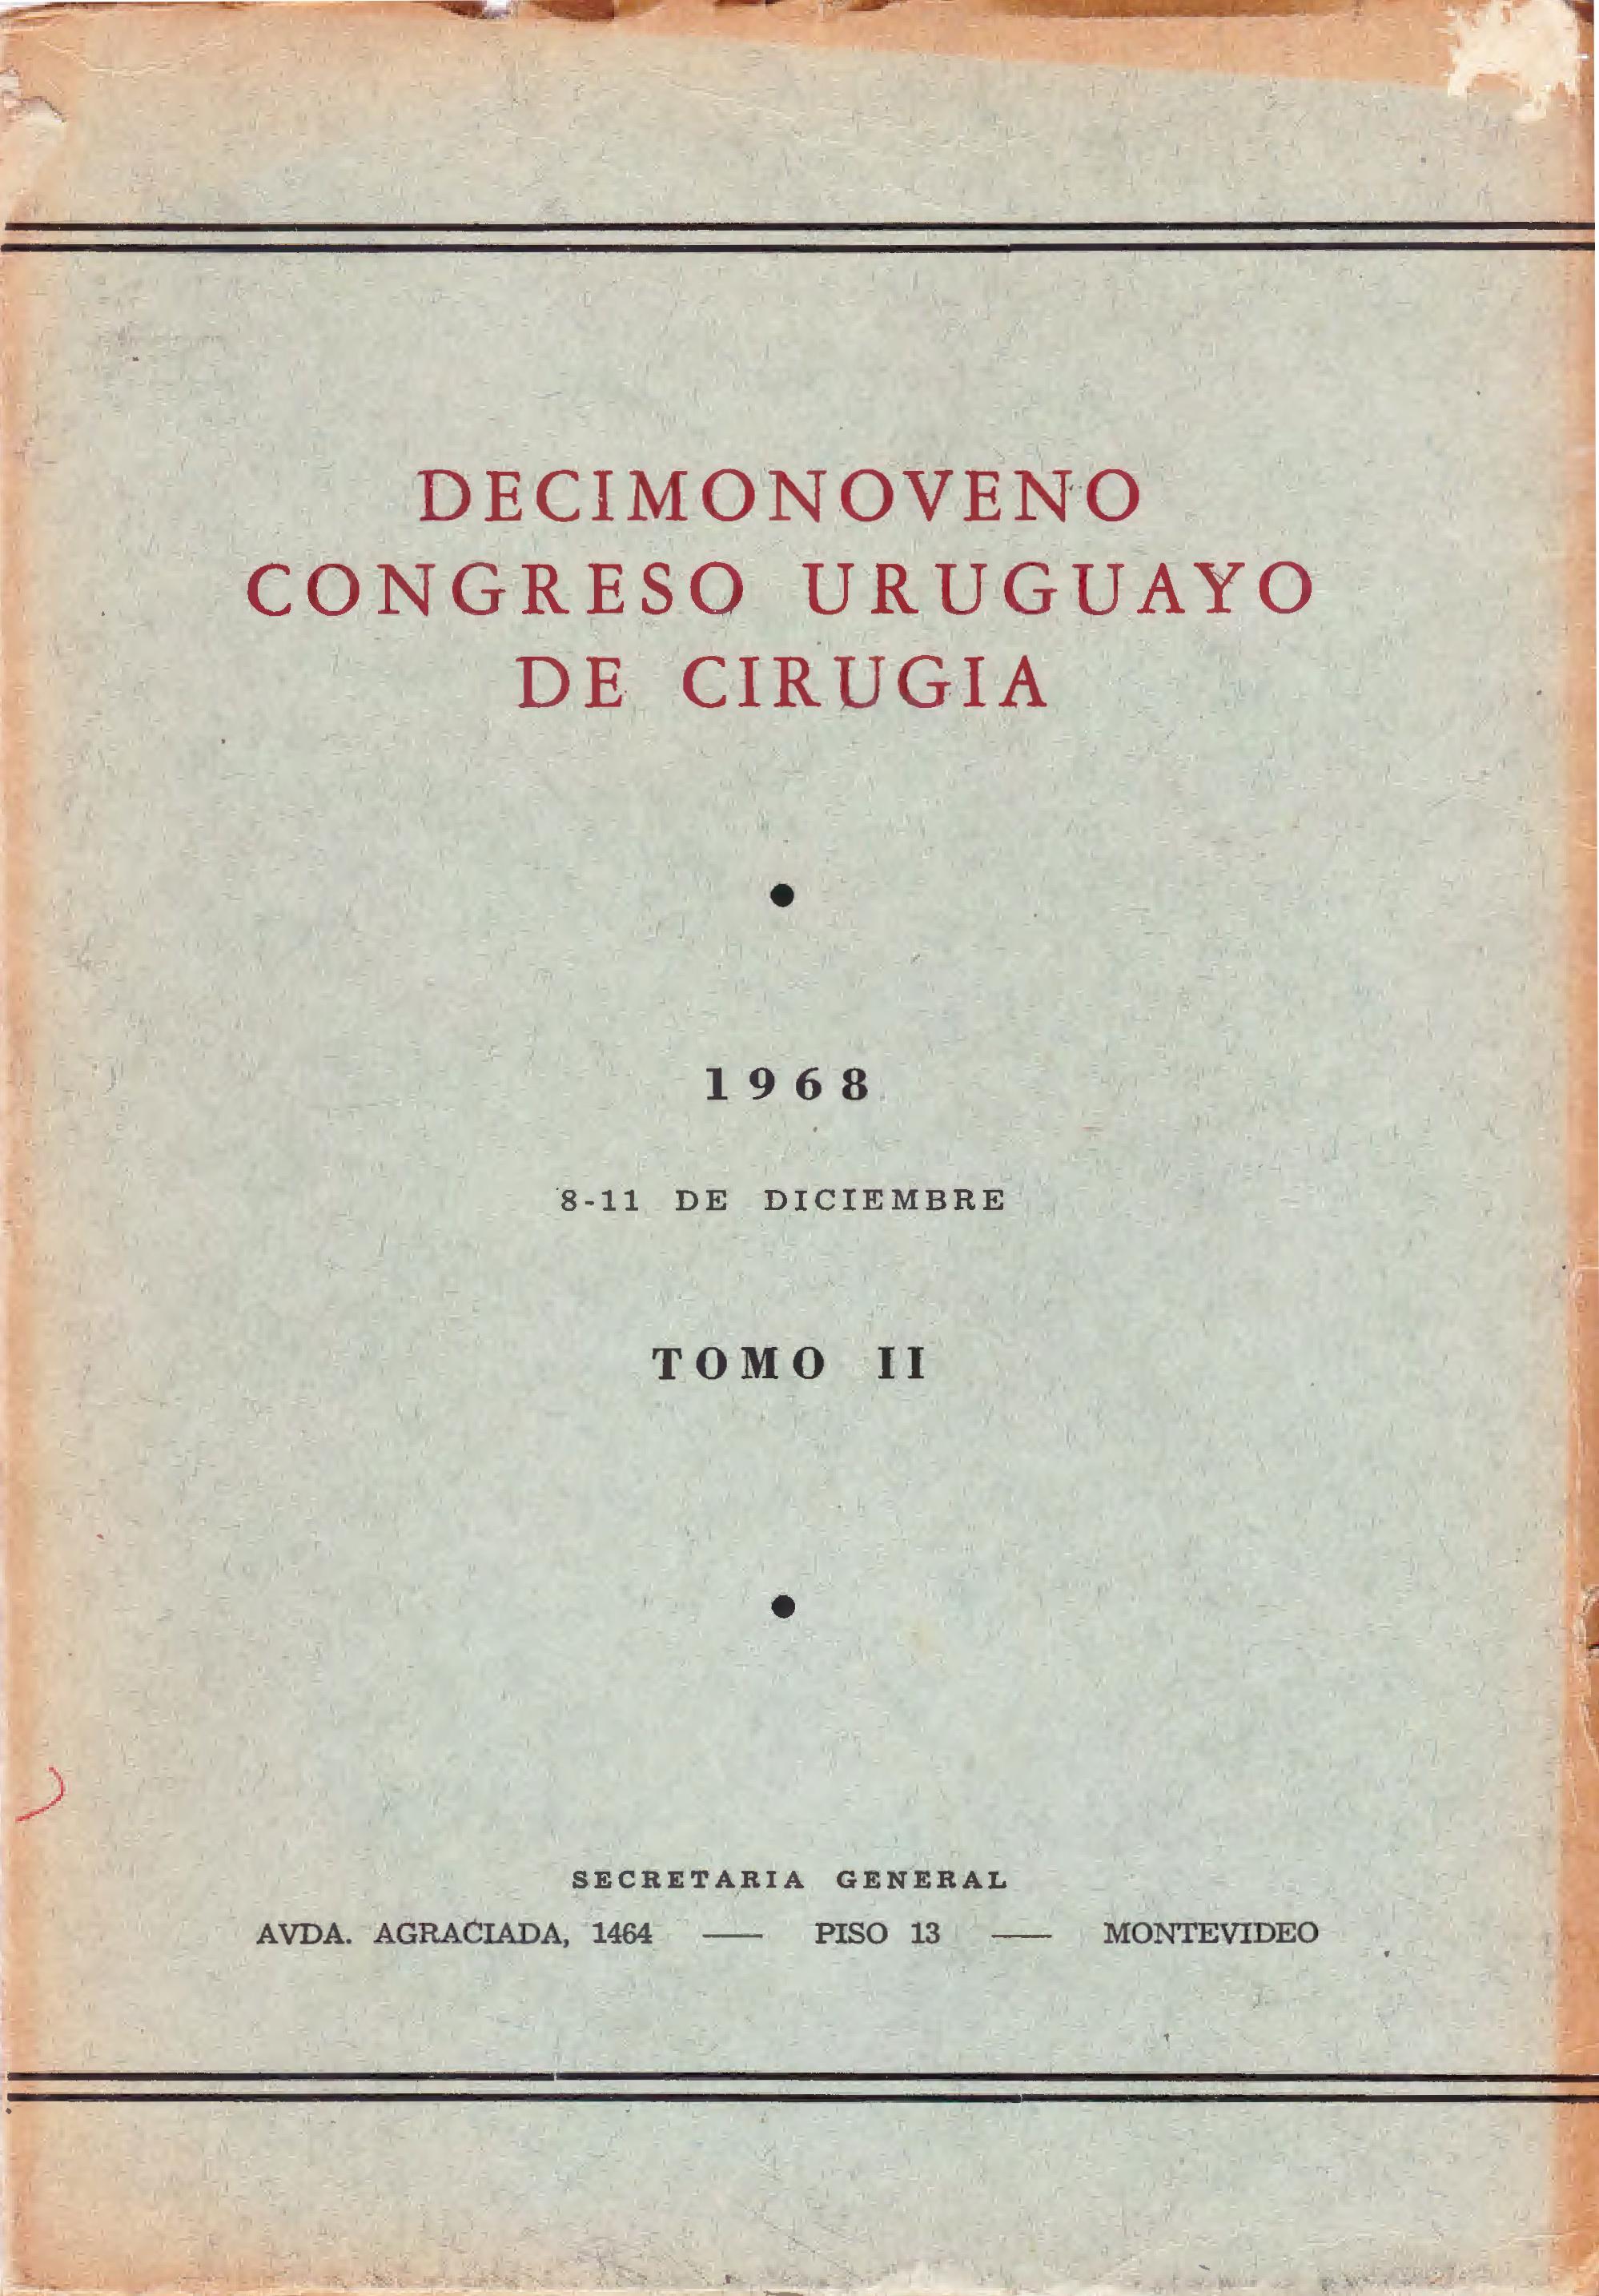 					View No. 2 (1968): Congresos Uruguayos de Cirugía
				